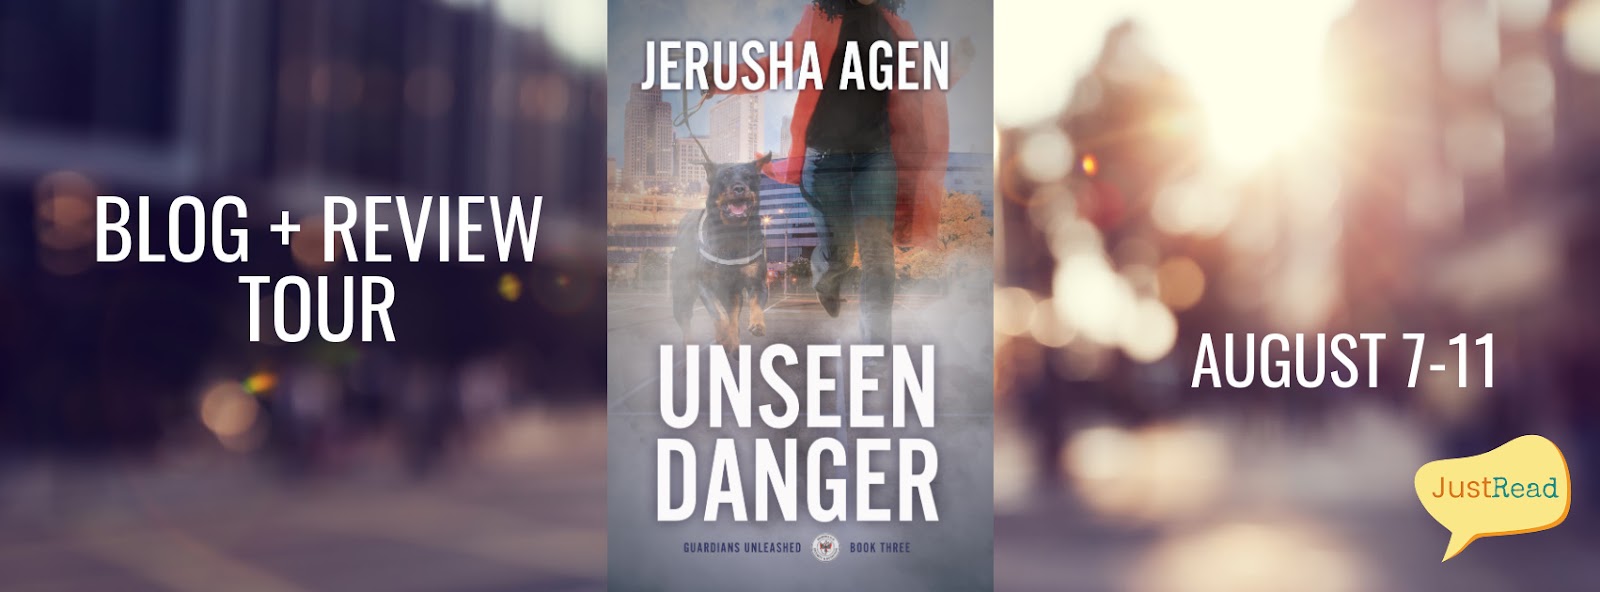 Unseen Danger JustRead Blog + Review Tour